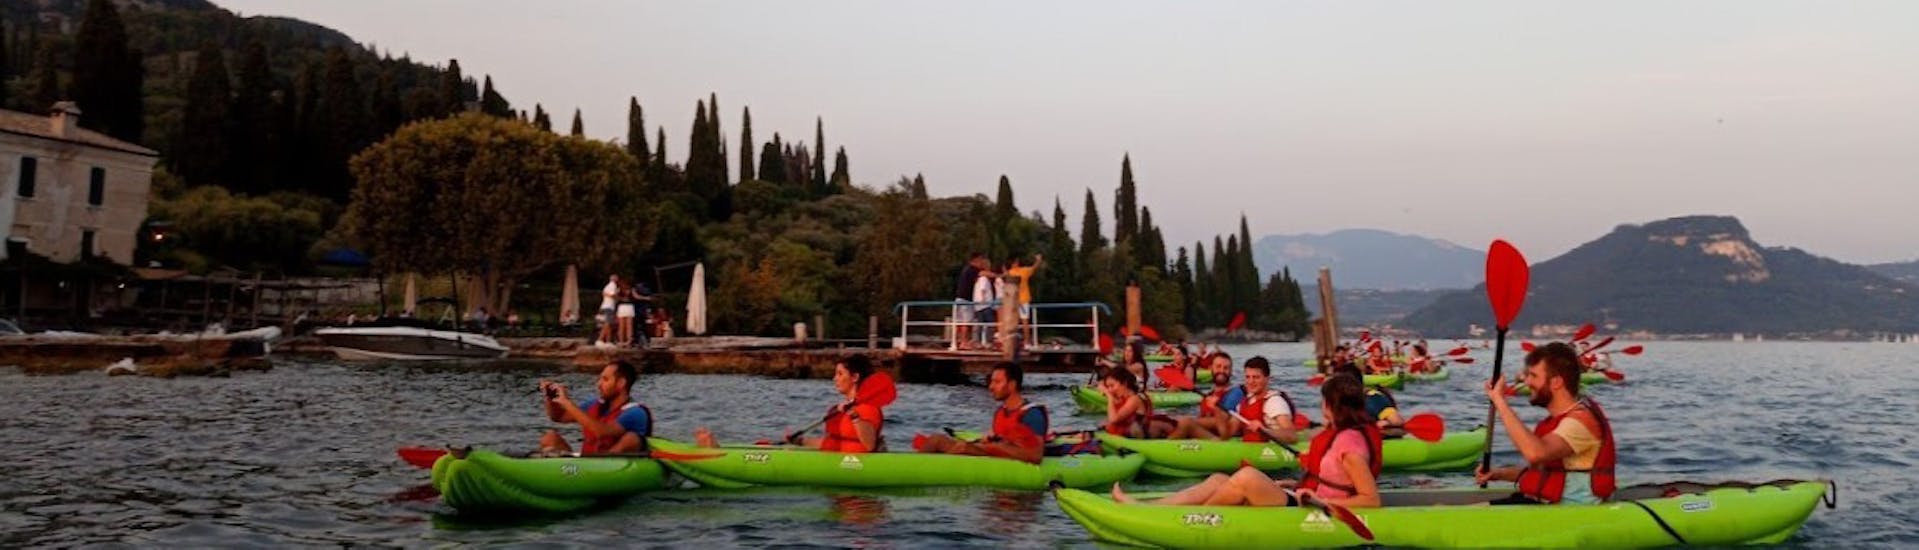 Vista del tramonto durante il Kayak al tramonto sul lago di Garda per famiglie e amici con Xadventure Outdoor Lake Garda.